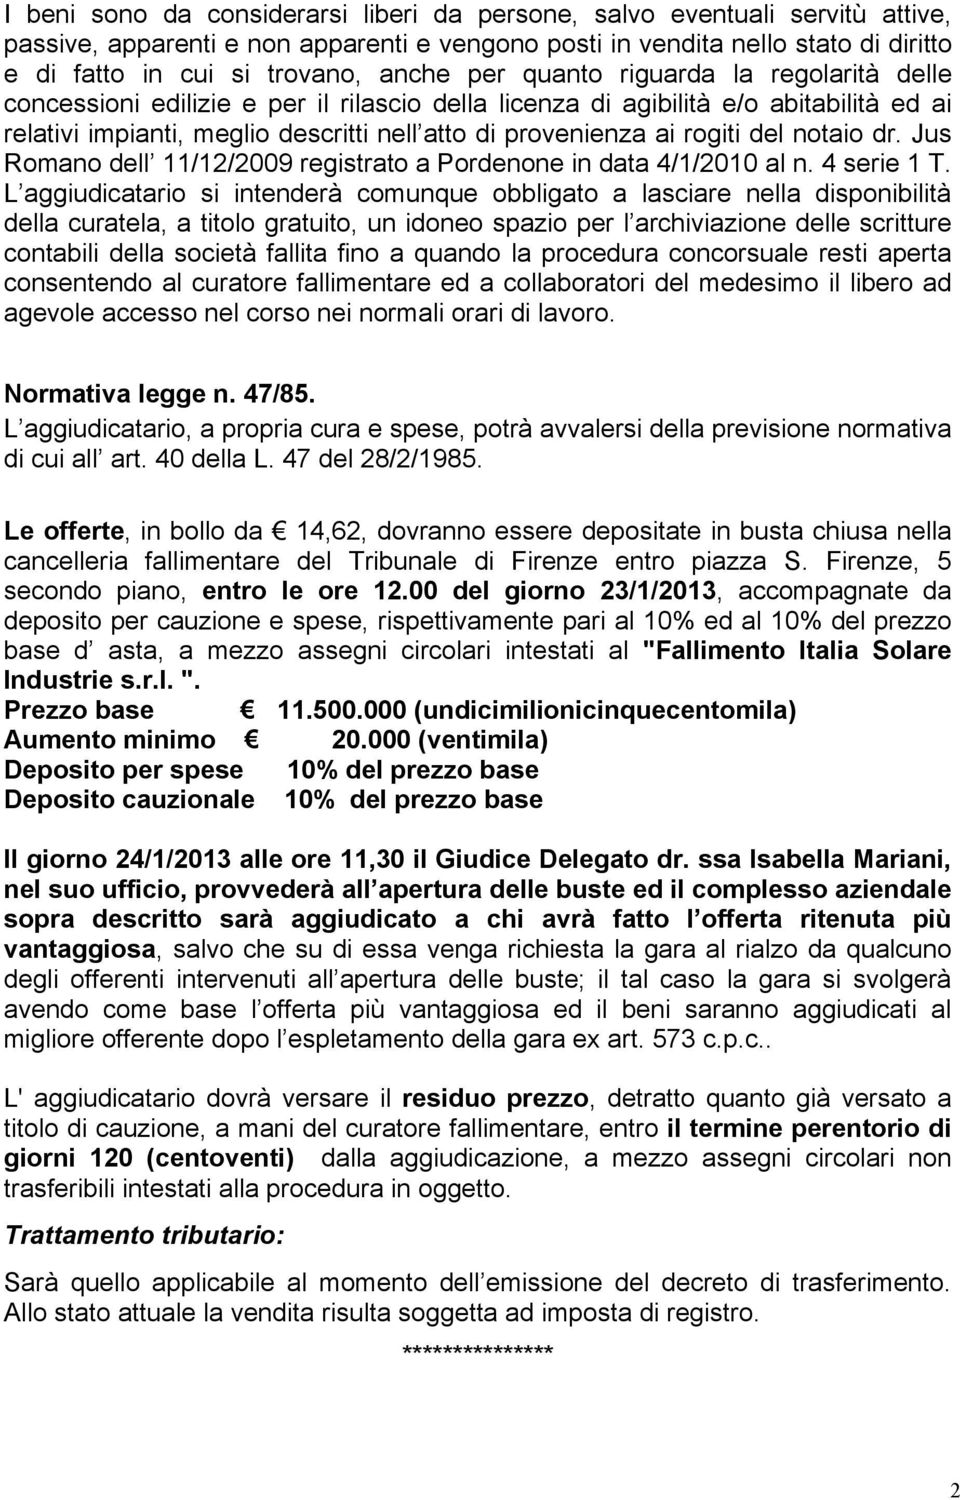 del notaio dr. Jus Romano dell 11/12/2009 registrato a Pordenone in data 4/1/2010 al n. 4 serie 1 T.